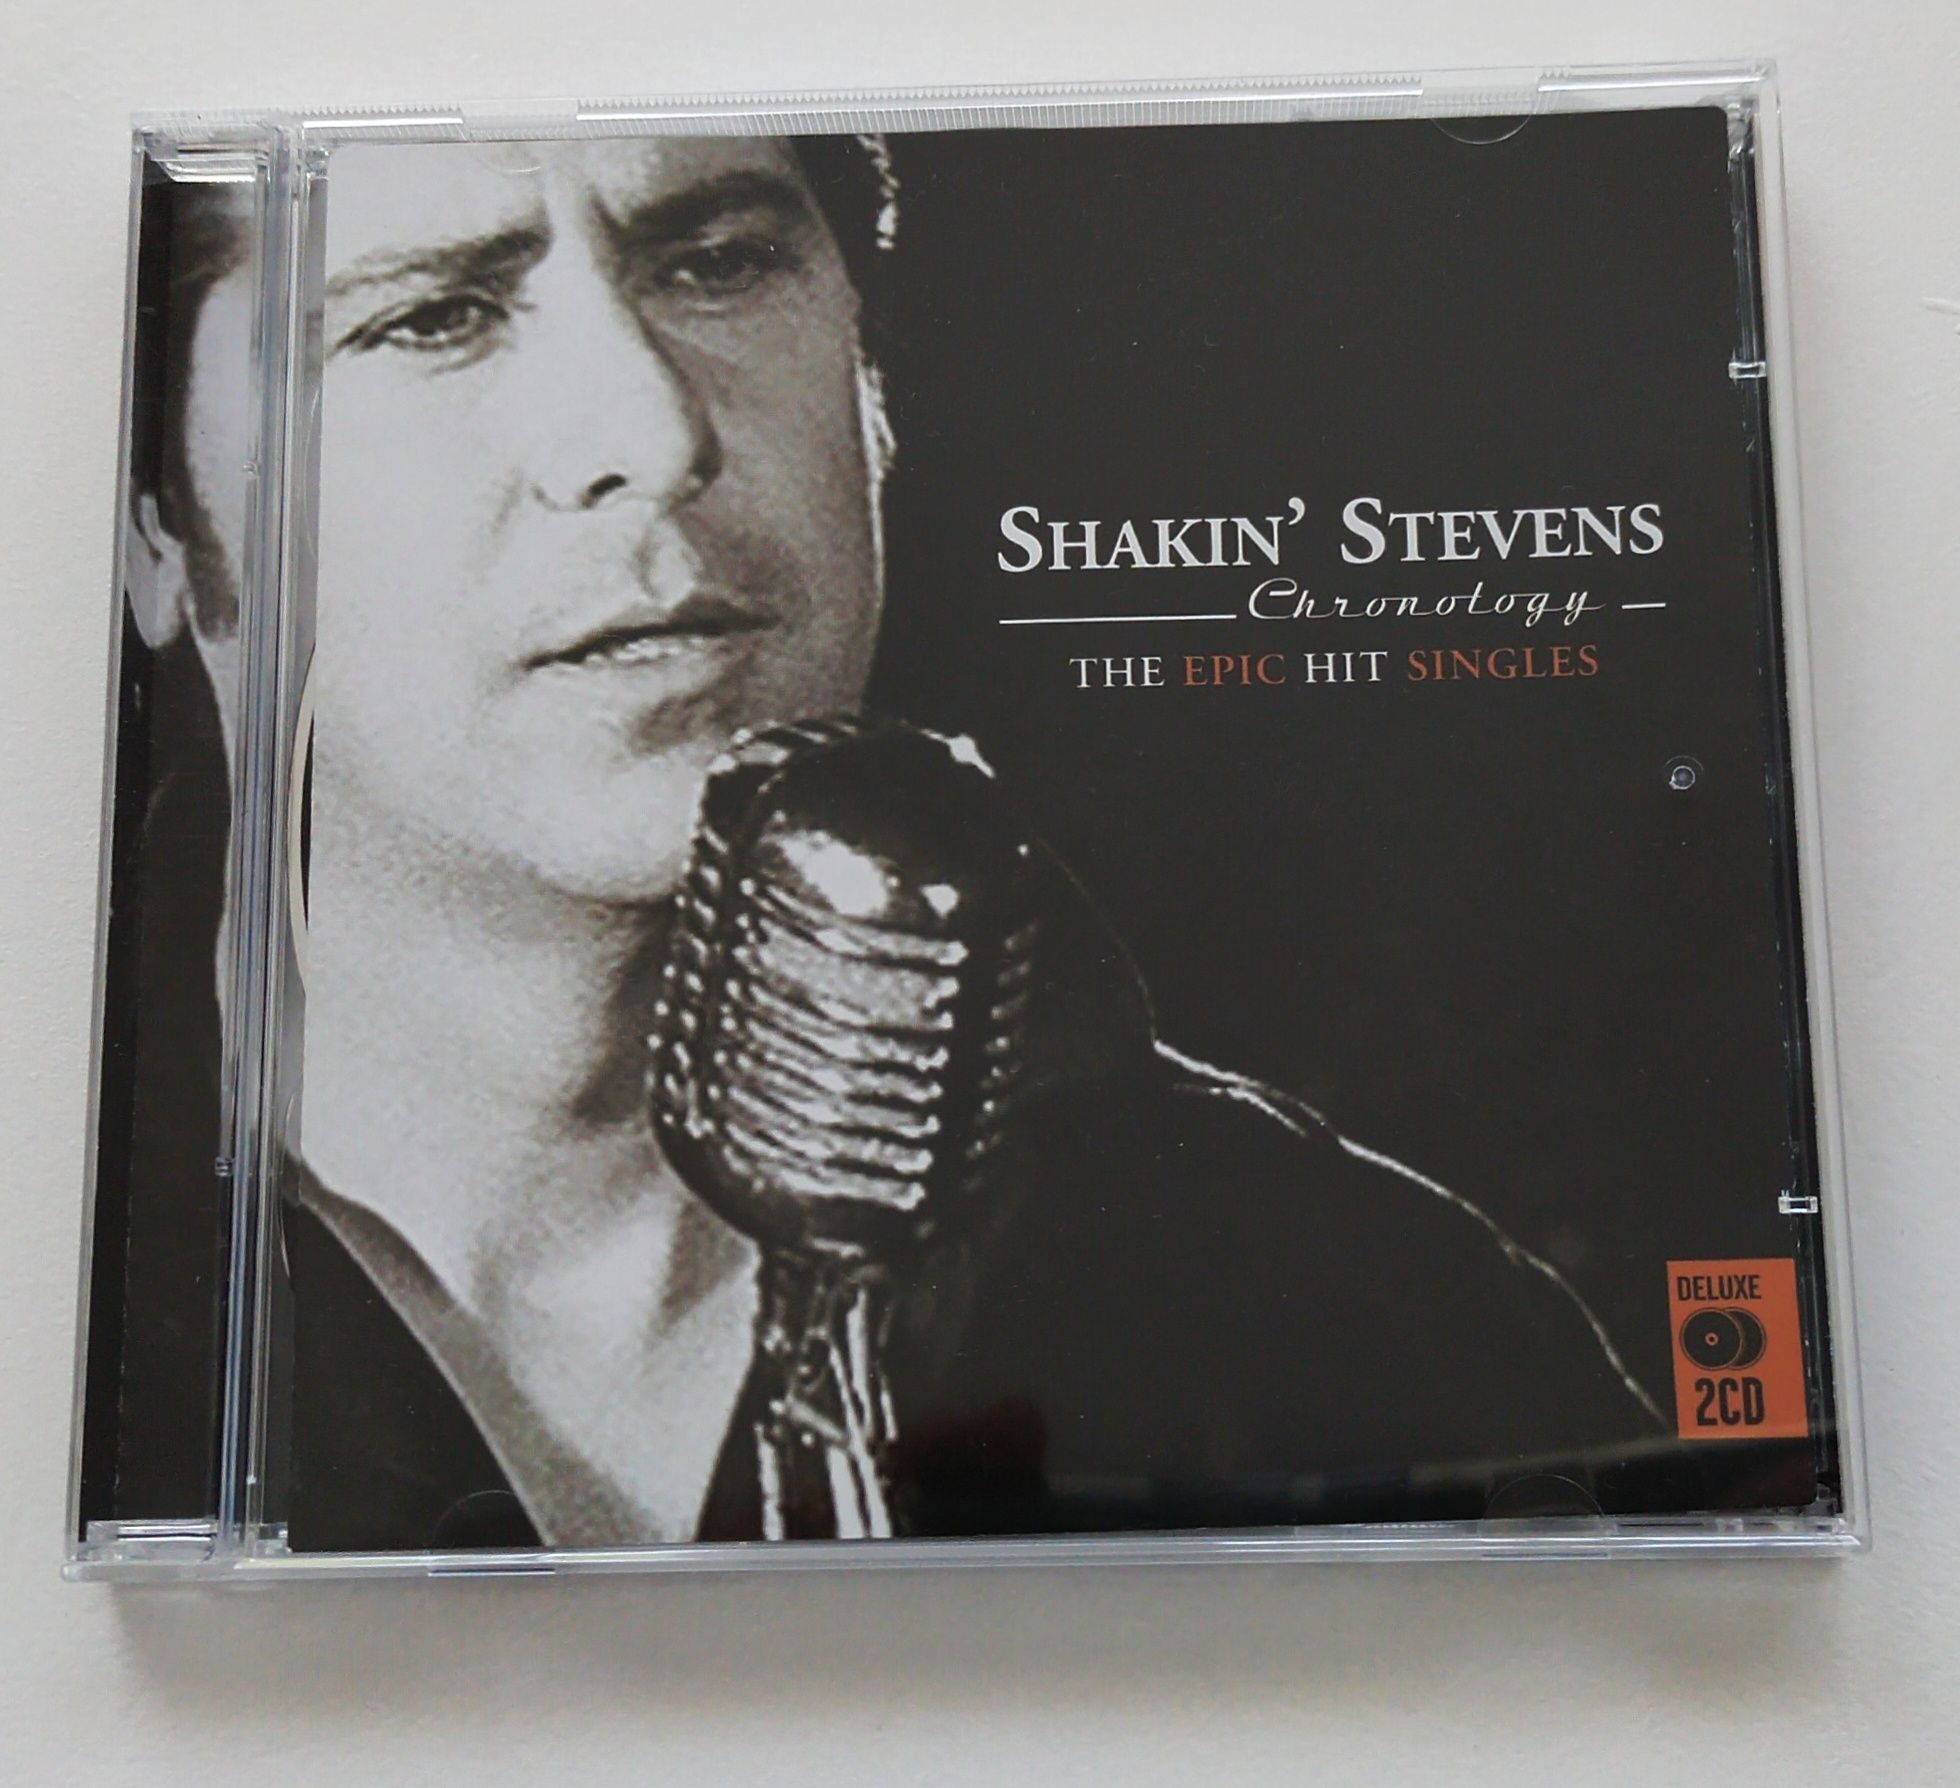 SHAKIN' STEVENS The epic hit singles